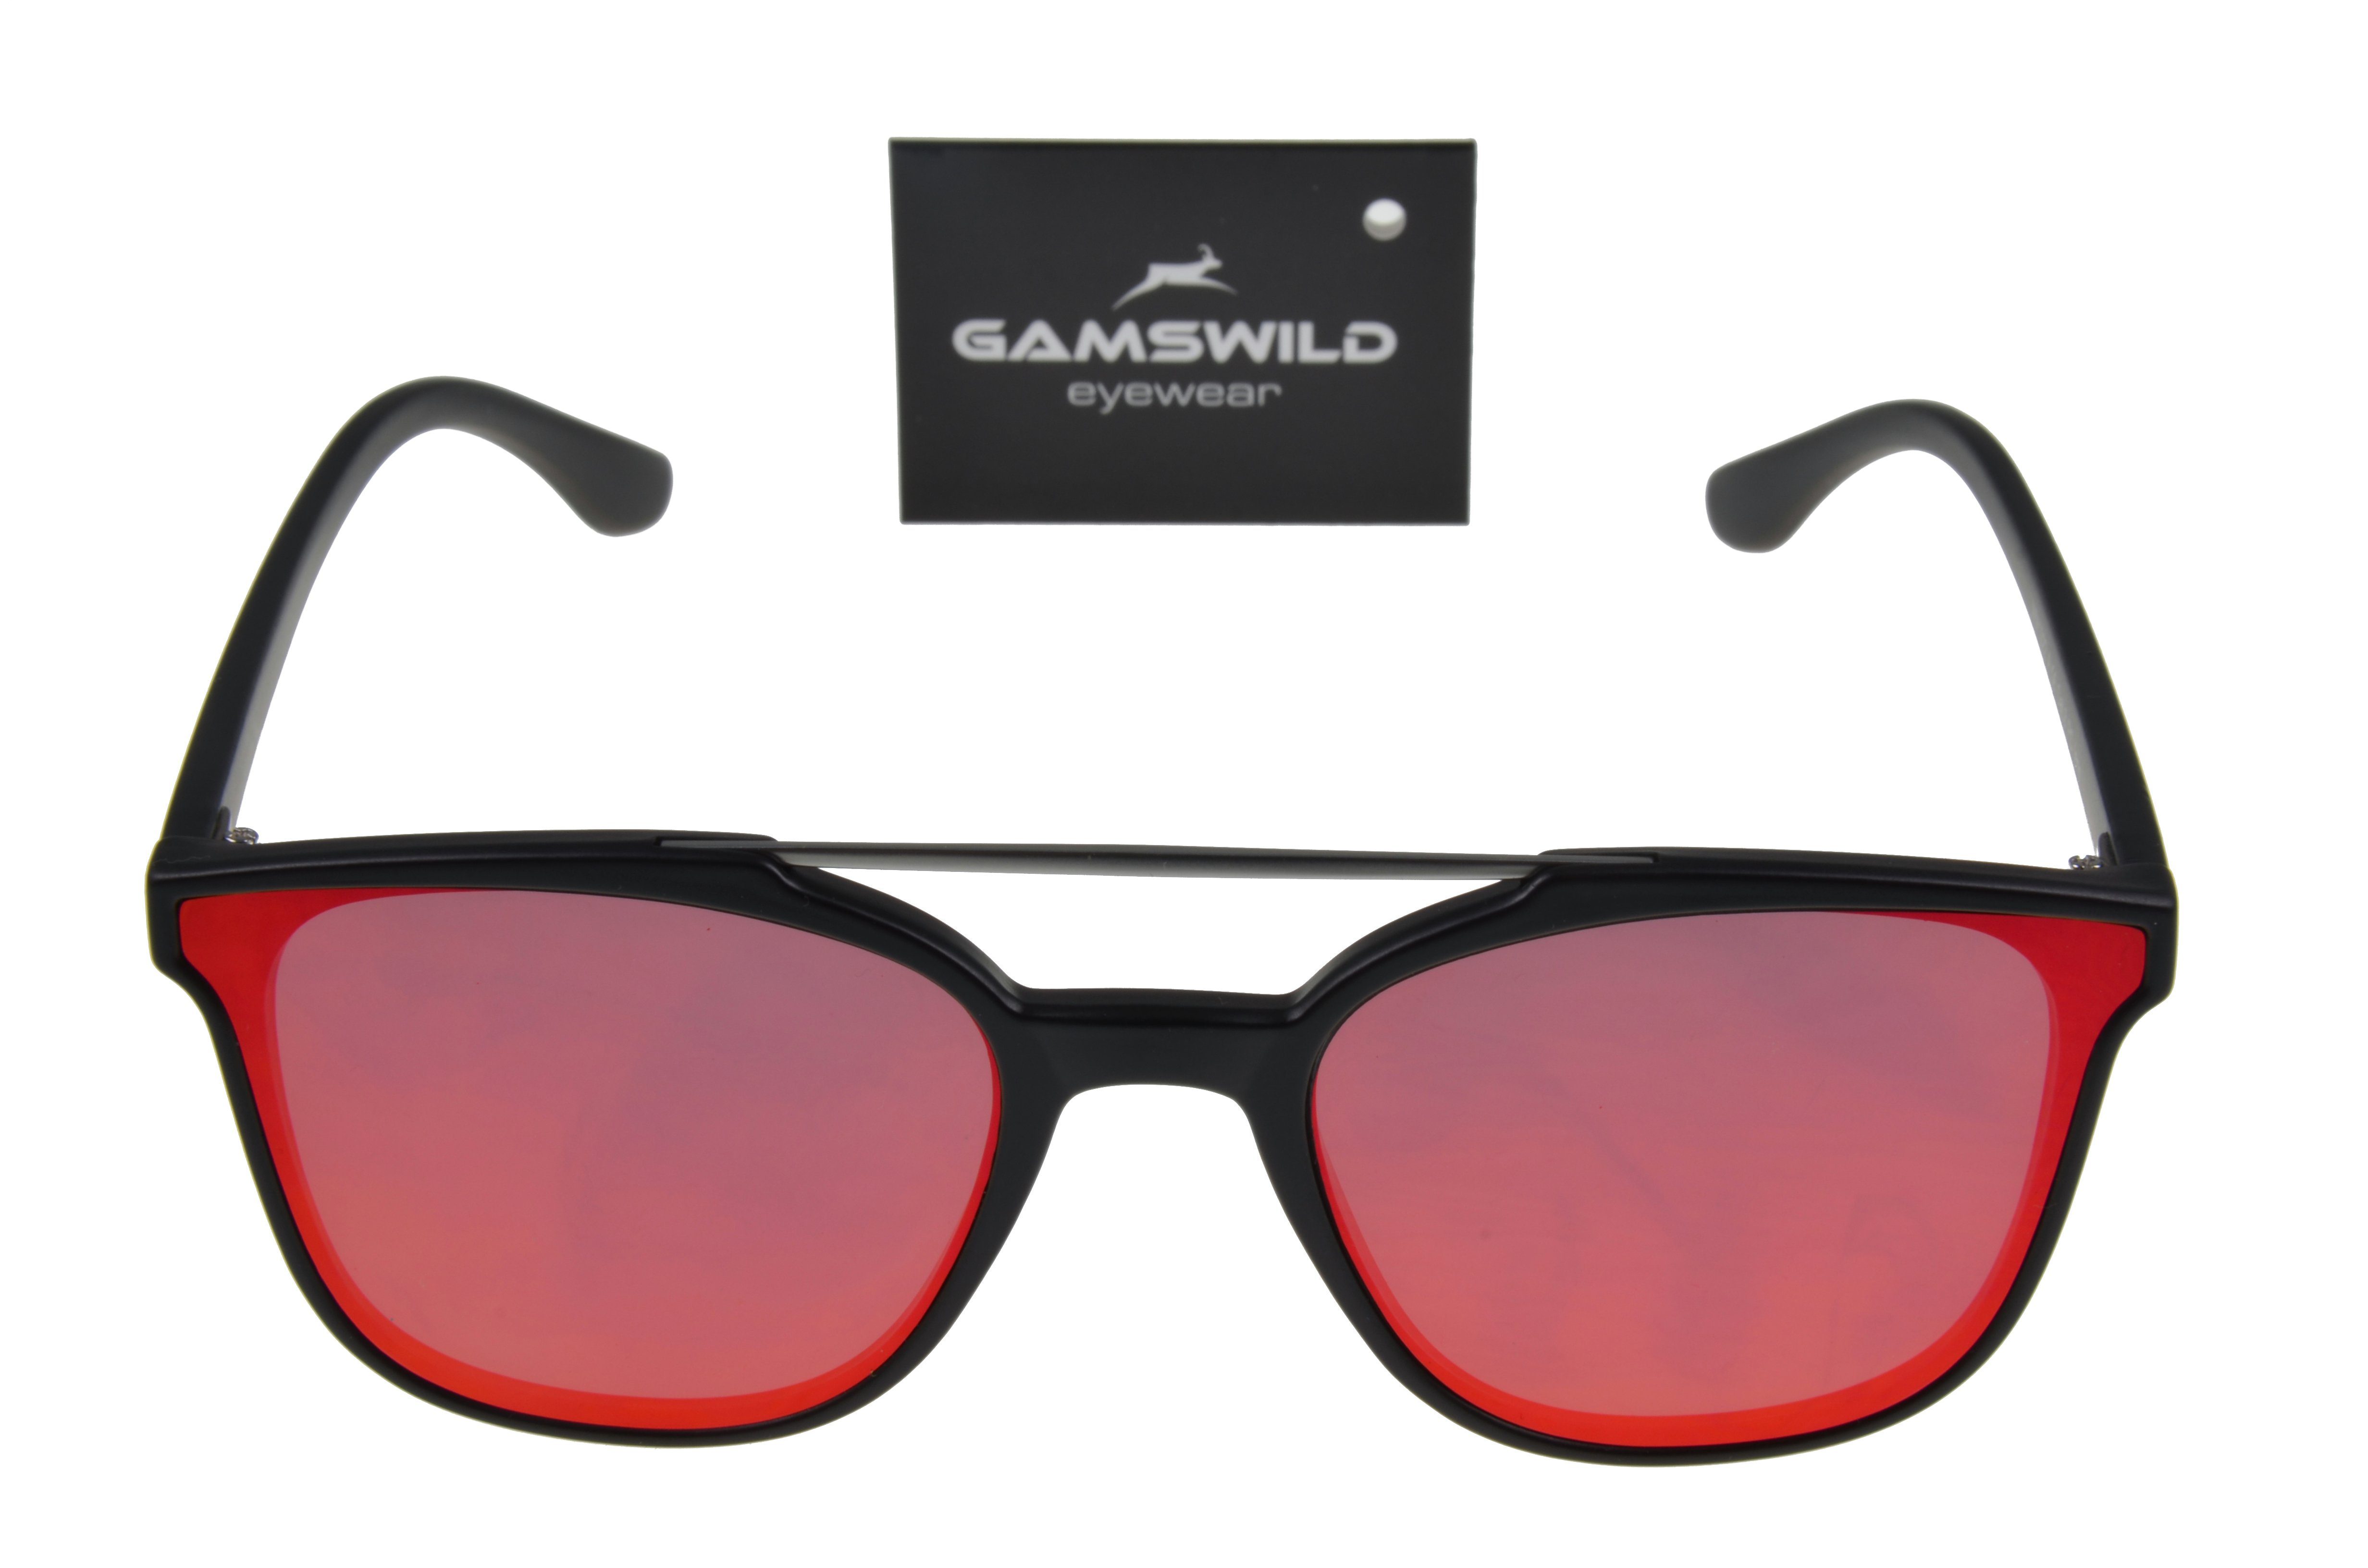 WM1022 Unisex Damen GAMSSTYLE silber Sonnenbrille Mode Cat-Eye, gold, Herren Brille violett, Gamswild Quersteg rot,